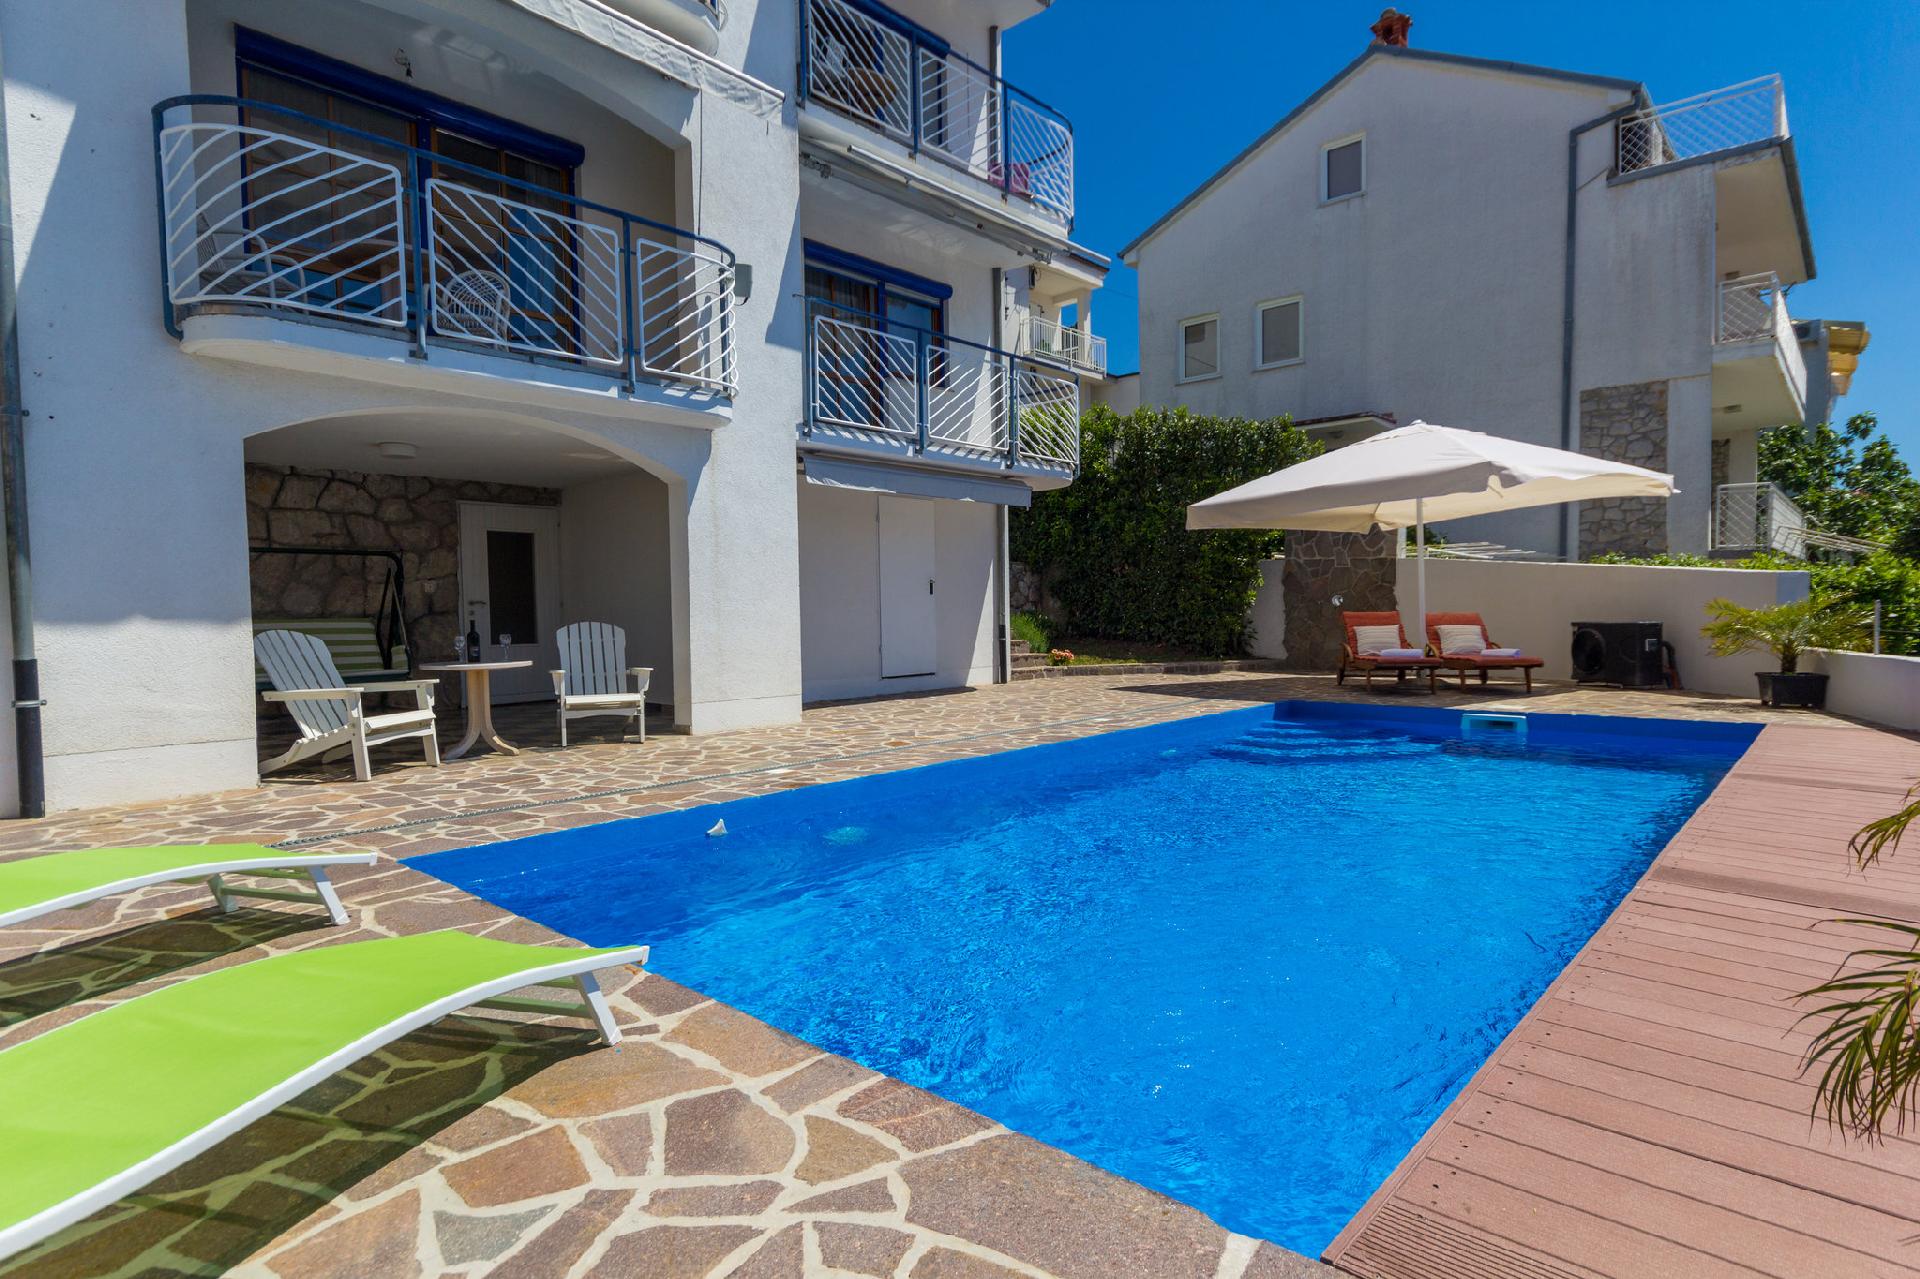 Ferienwohnung für 4 Personen ca. 40 m² i  in Kroatien